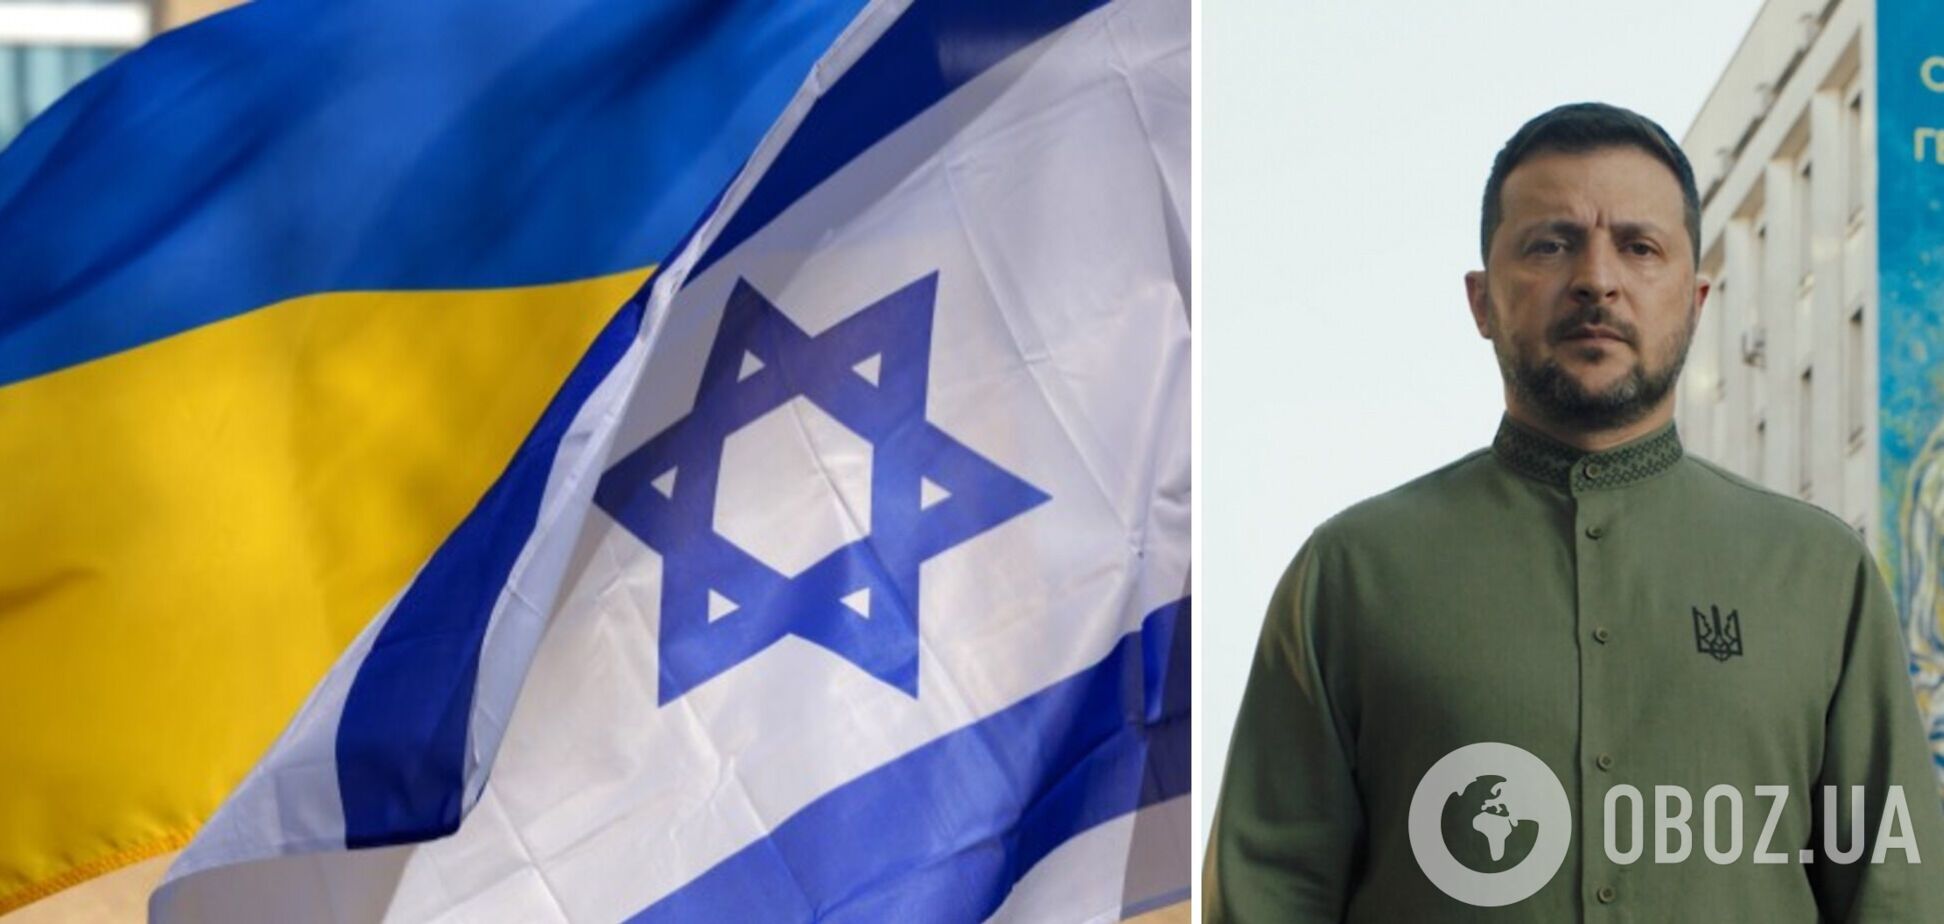 'Як Ізраїль': Зеленський заявив, що Україна готова воювати 'в довгу', але не втрачаючи людей